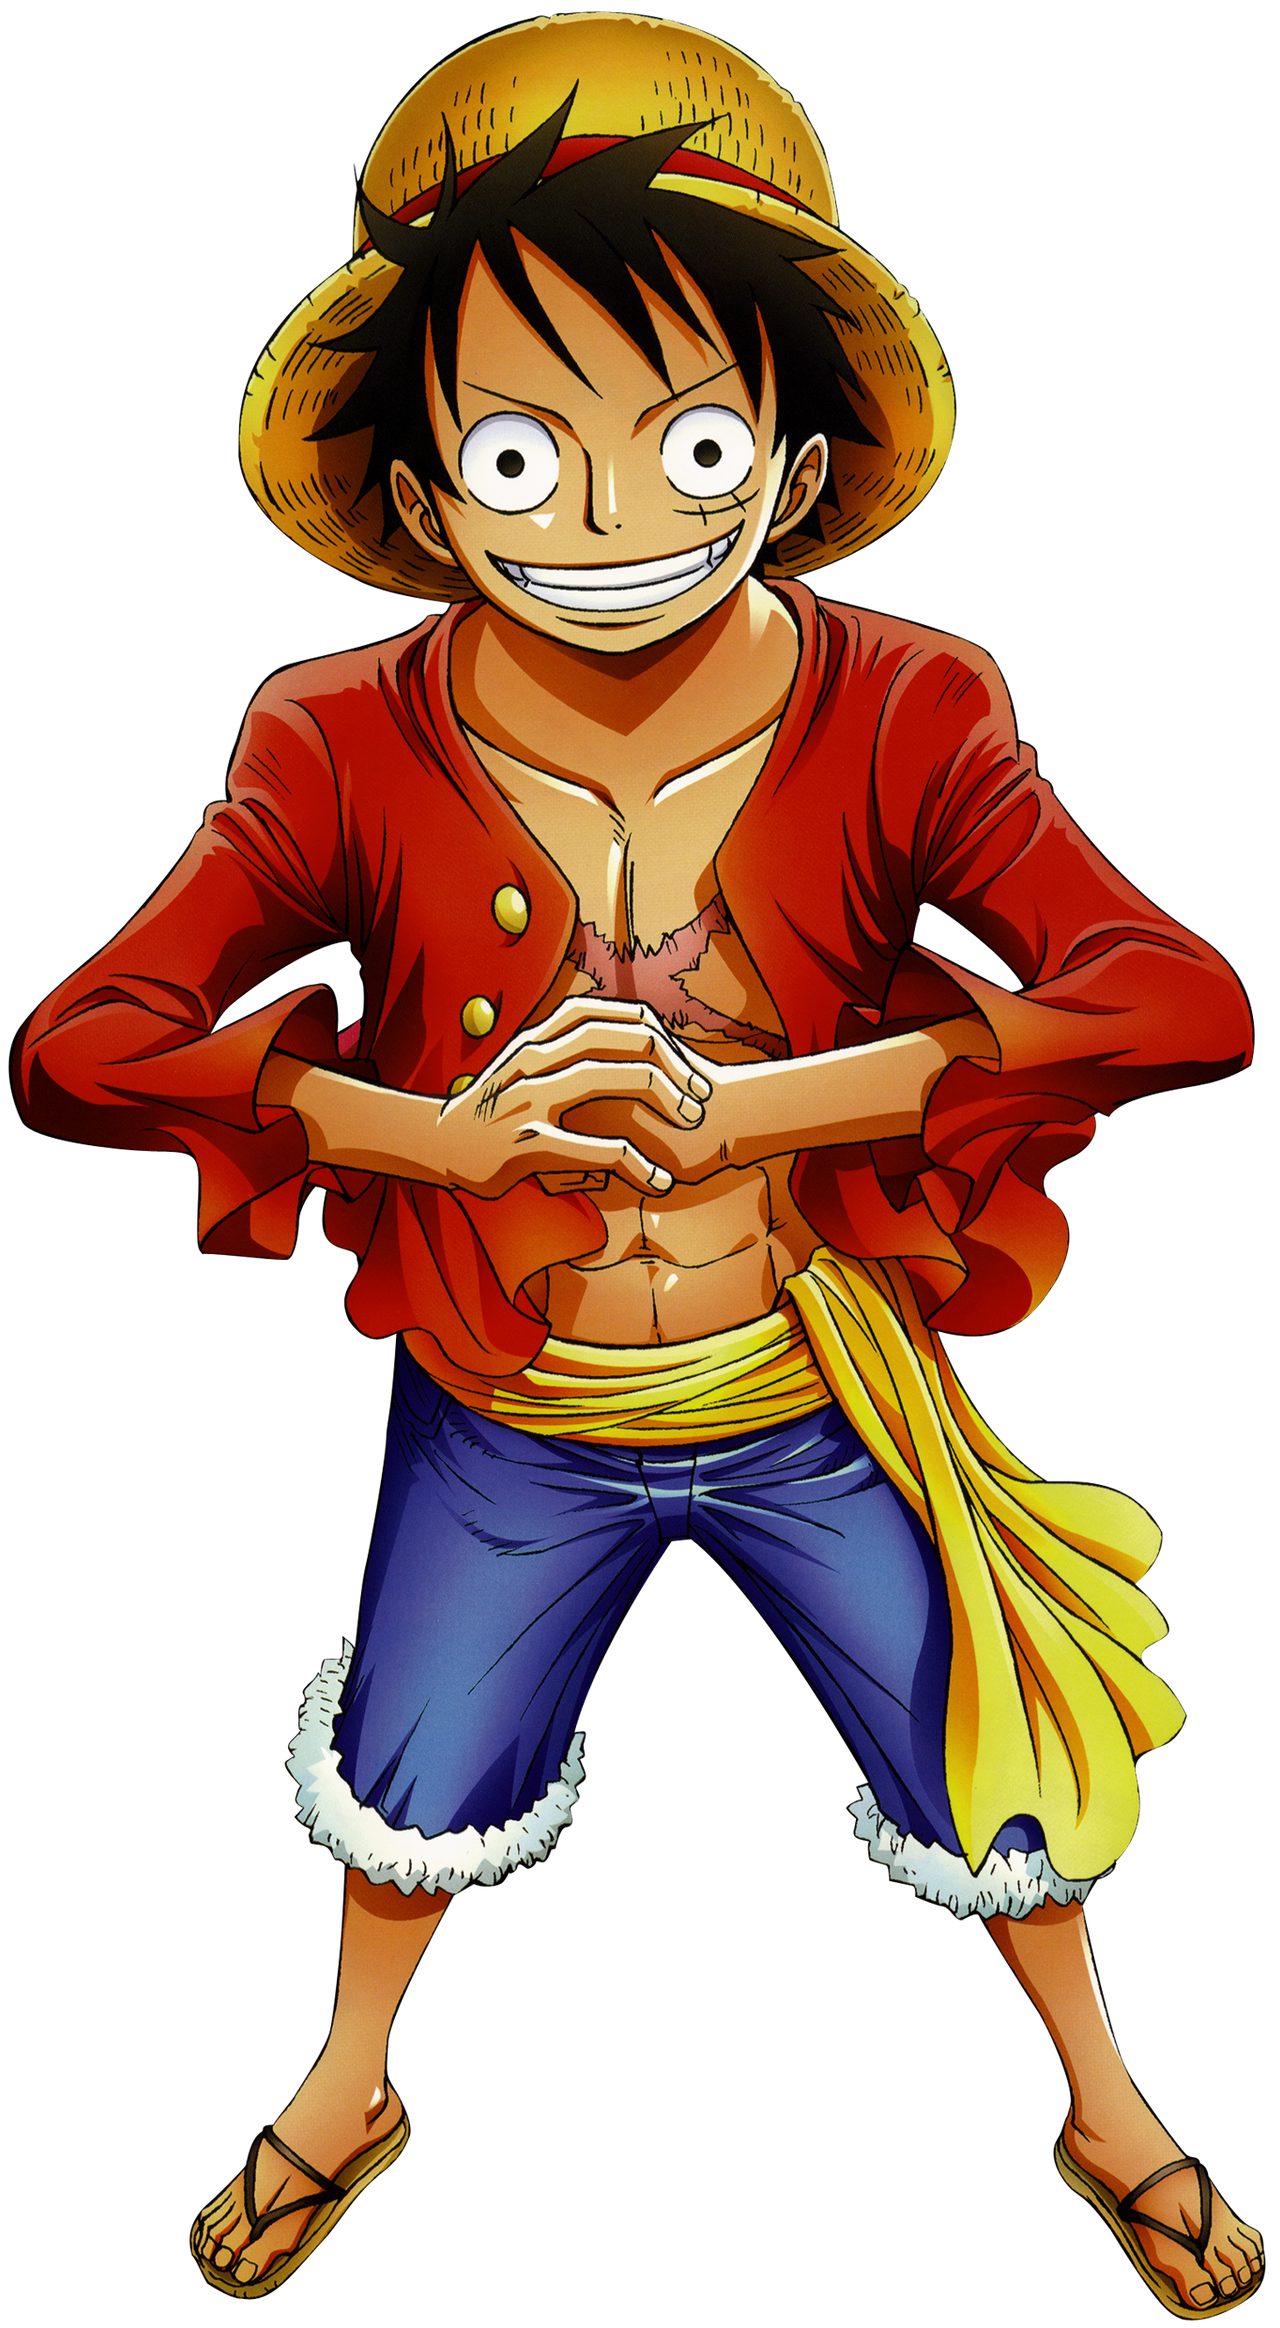 Monkey D Luffy Render 2 by RoronoaRoel on DeviantArt